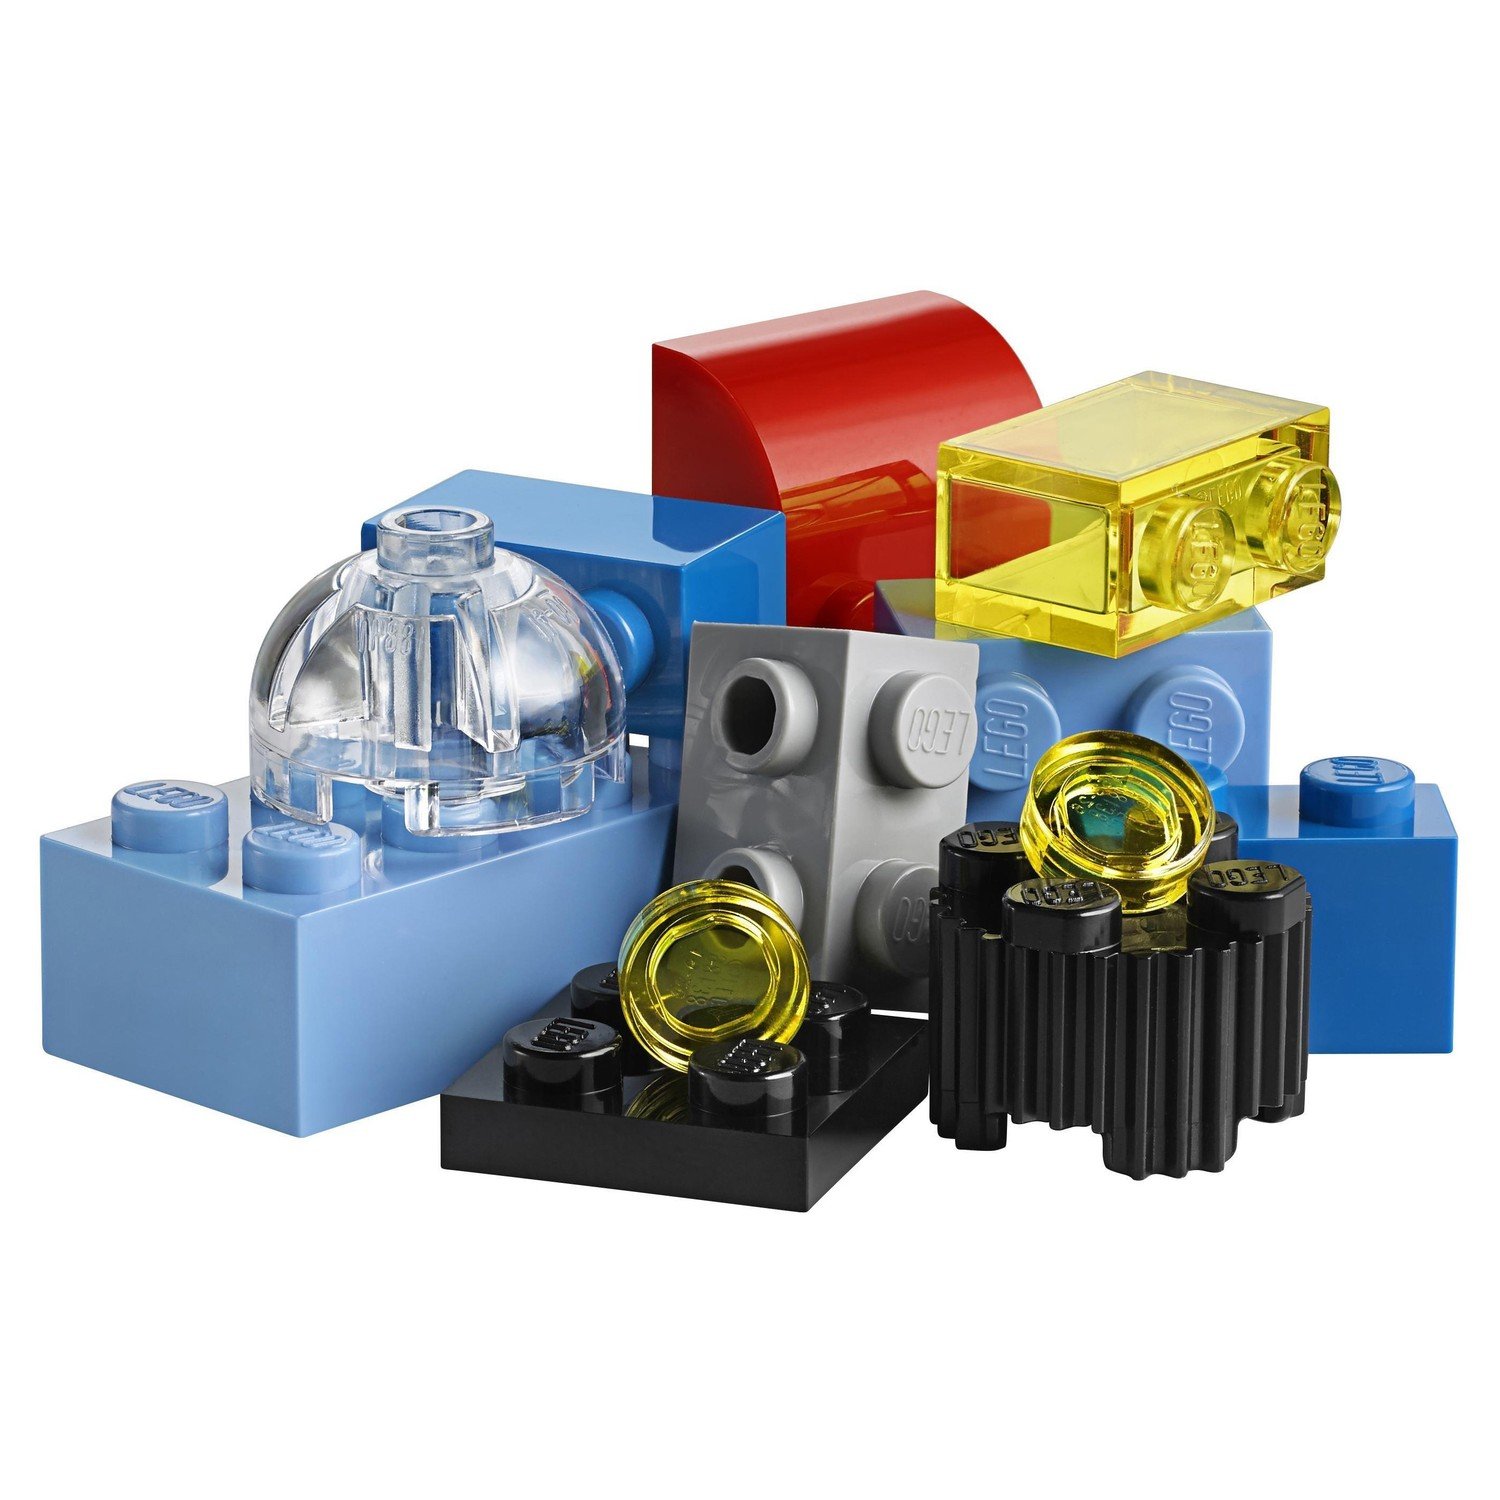 Конструктор LEGO Чемоданчик для творчества и конструирования Classic (10713) - фото 5